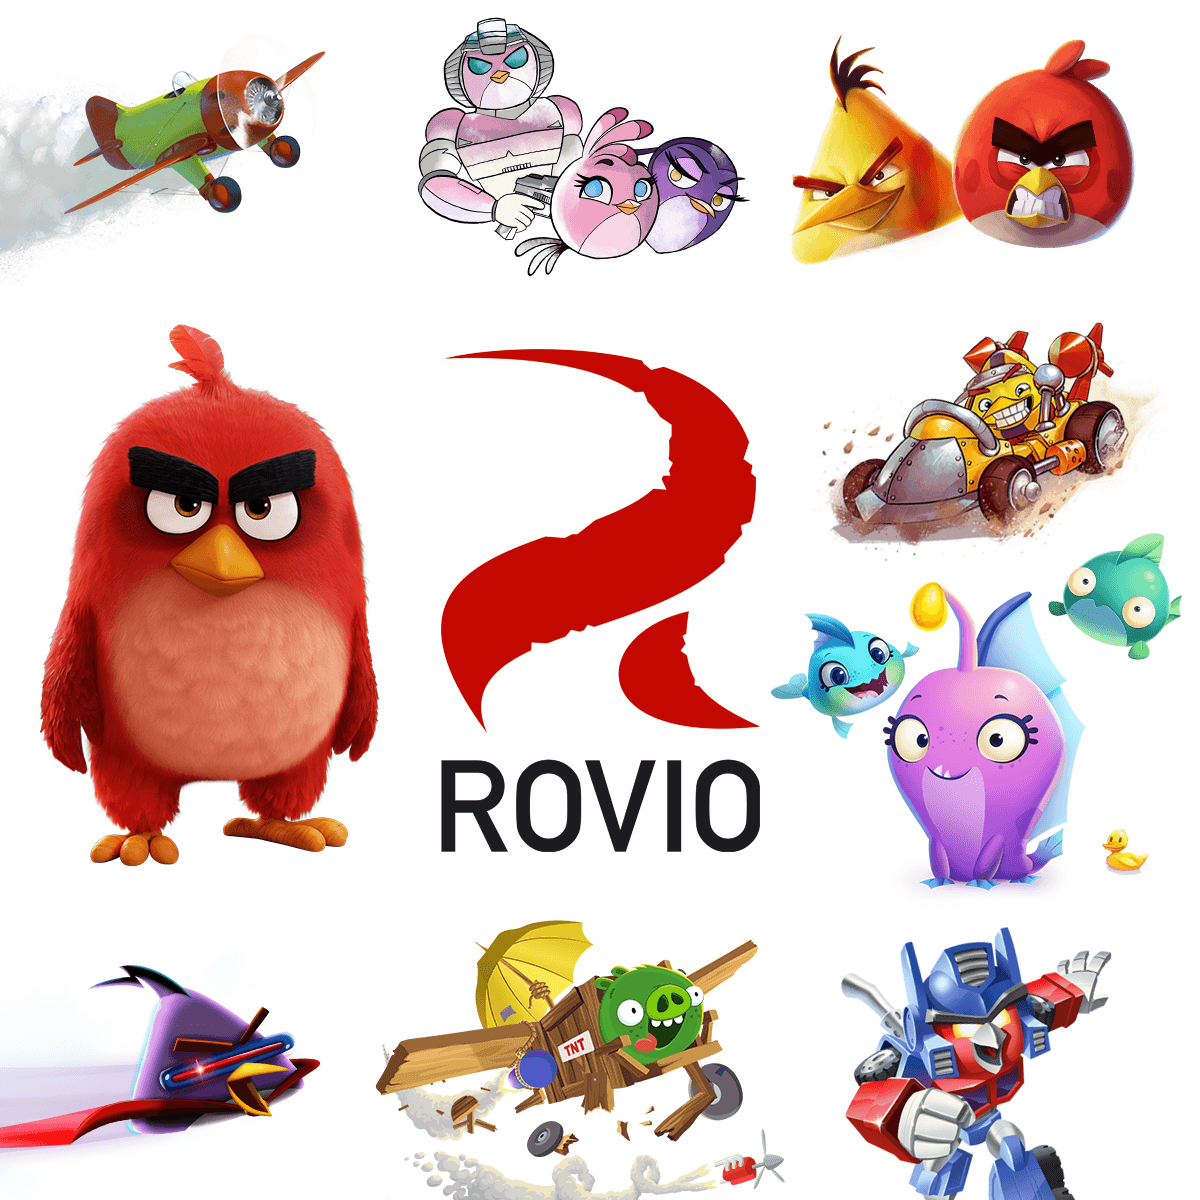 Bird 3 Game Logo - Rovio.com. The home of Rovio of Angry Birds, Bad Piggies